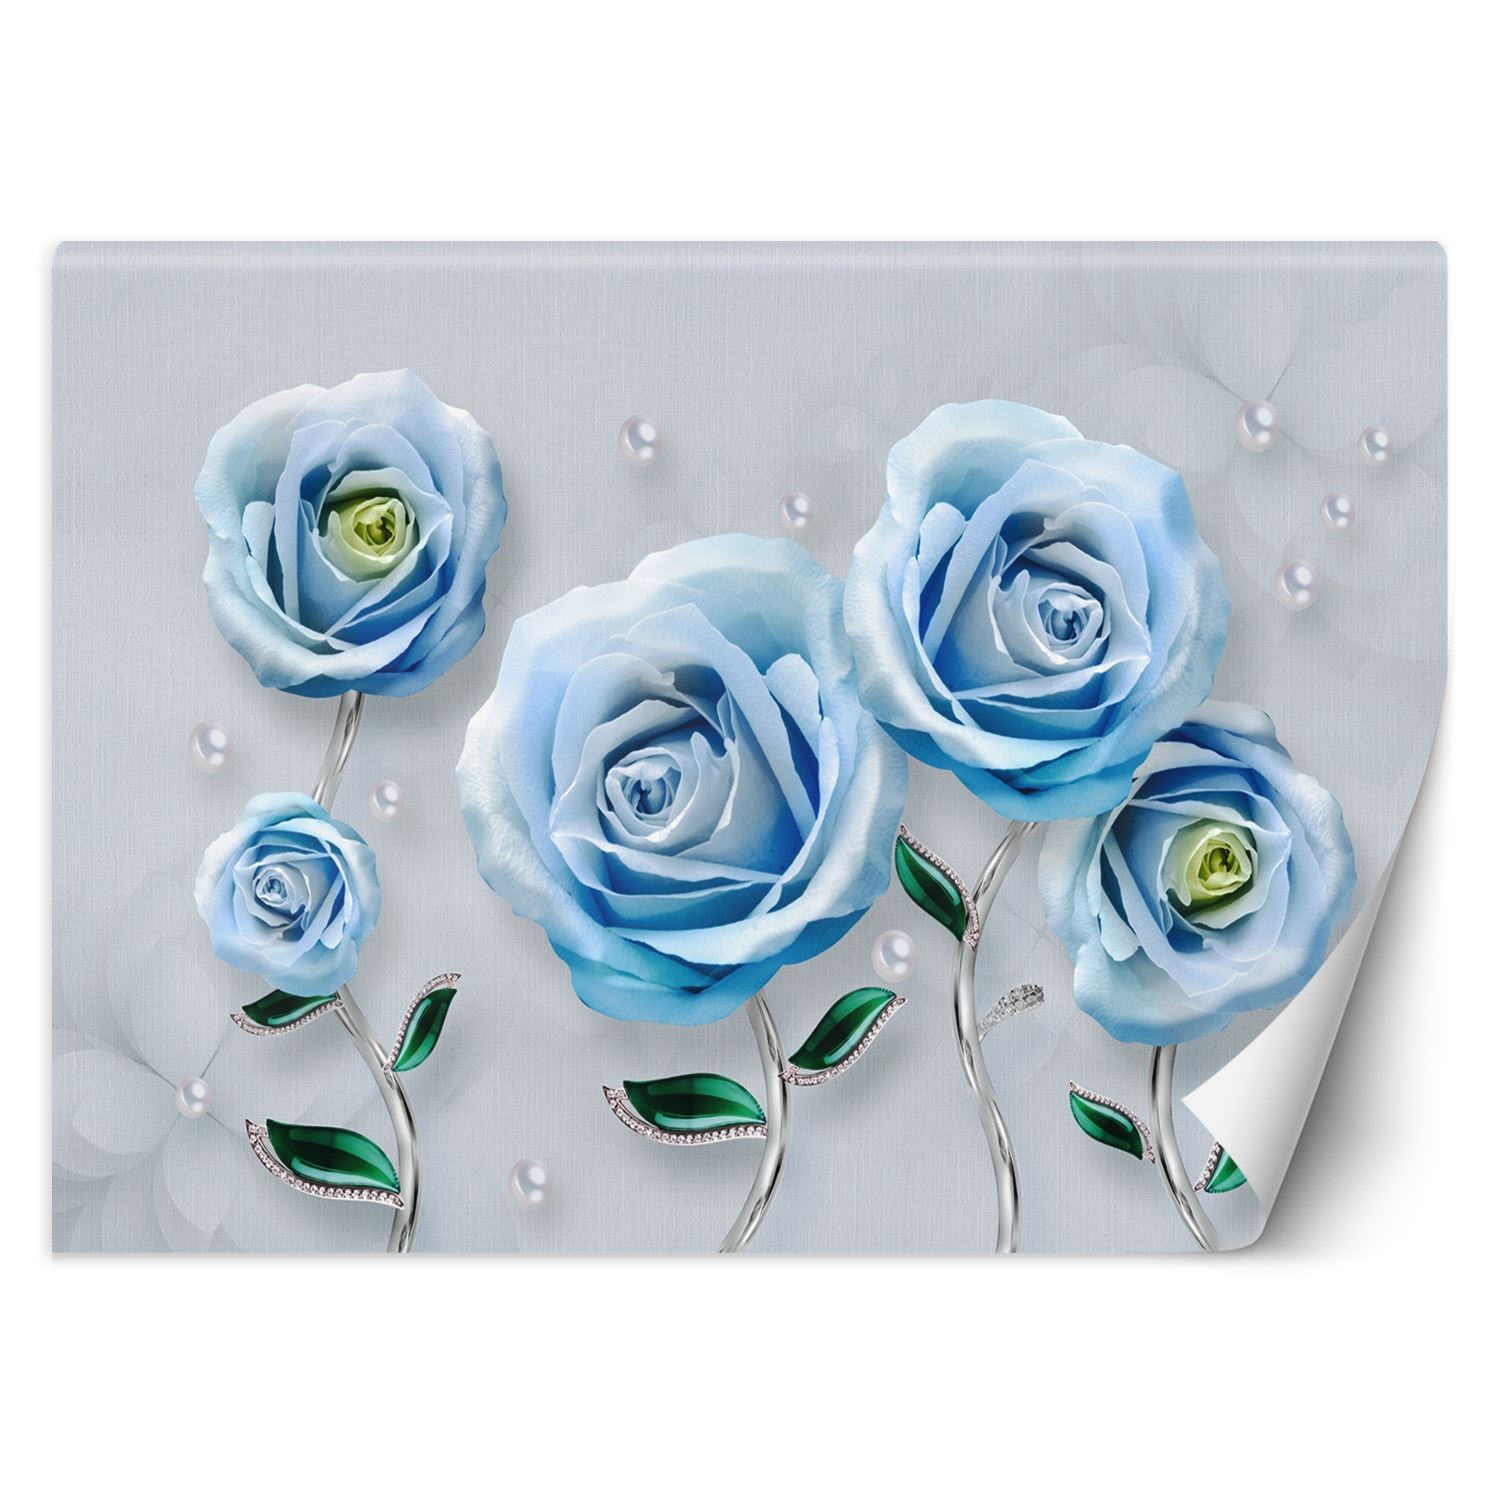 Trend24 – Behang – Blauwe Rozen 3D – Vliesbehang – Fotobehang Bloemen – Behang Woonkamer – 450x315x2 cm – Incl. behanglijm